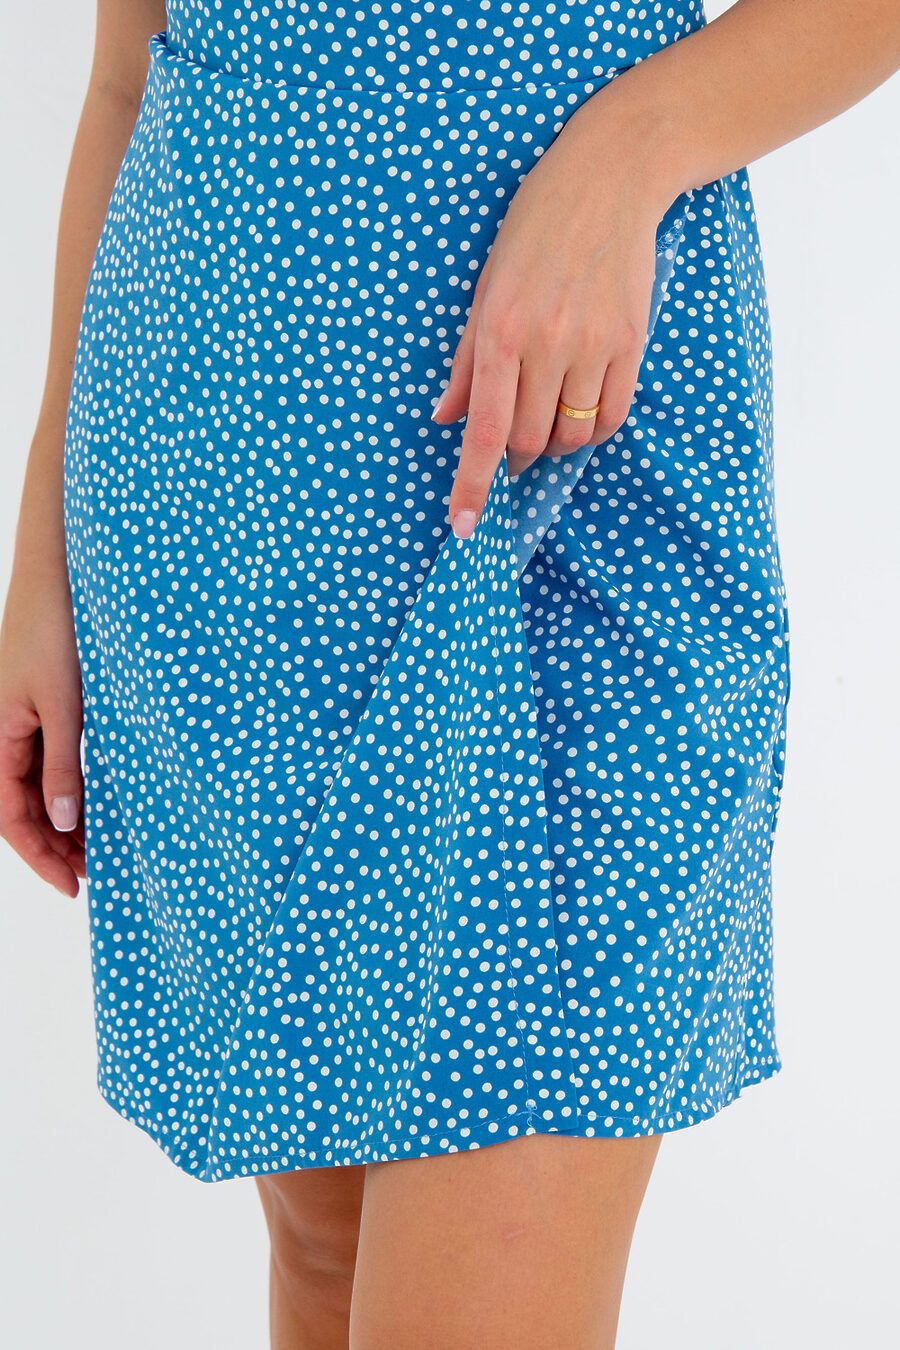 Платье П-18 для женщин НАТАЛИ 775473 купить оптом от производителя. Совместная покупка женской одежды в OptMoyo